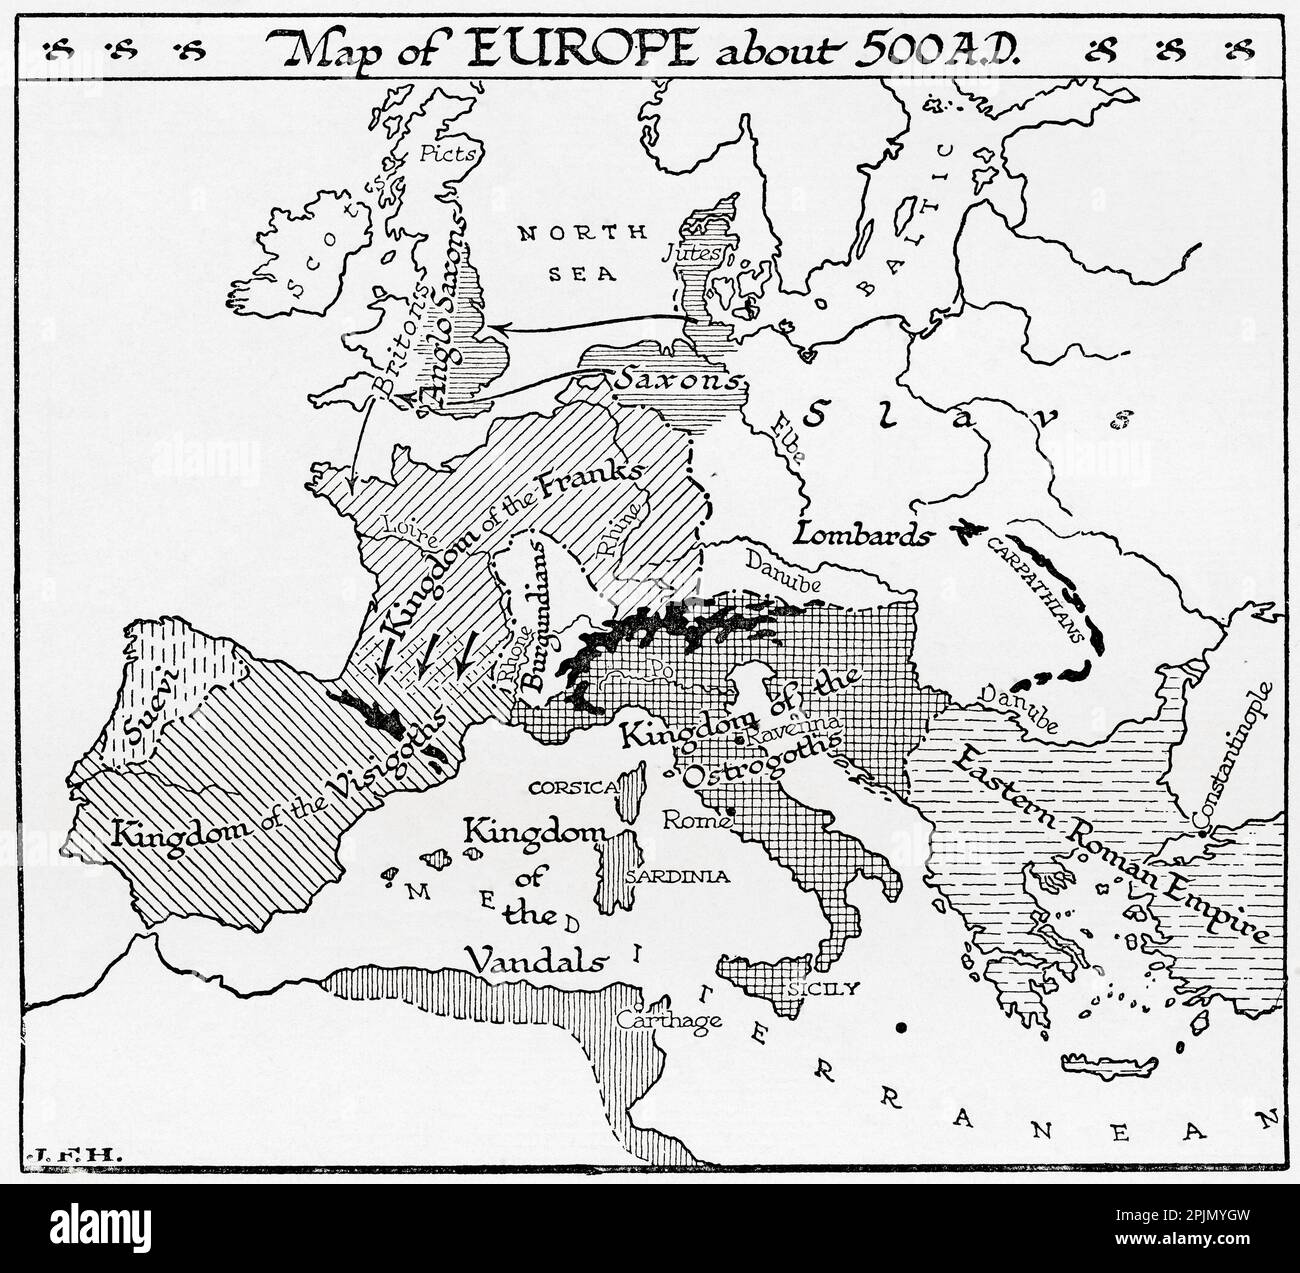 Mappa d'Europa circa 500 d.C. Dal libro Outline of History di H.G. Wells, pubblicato nel 1920. Foto Stock